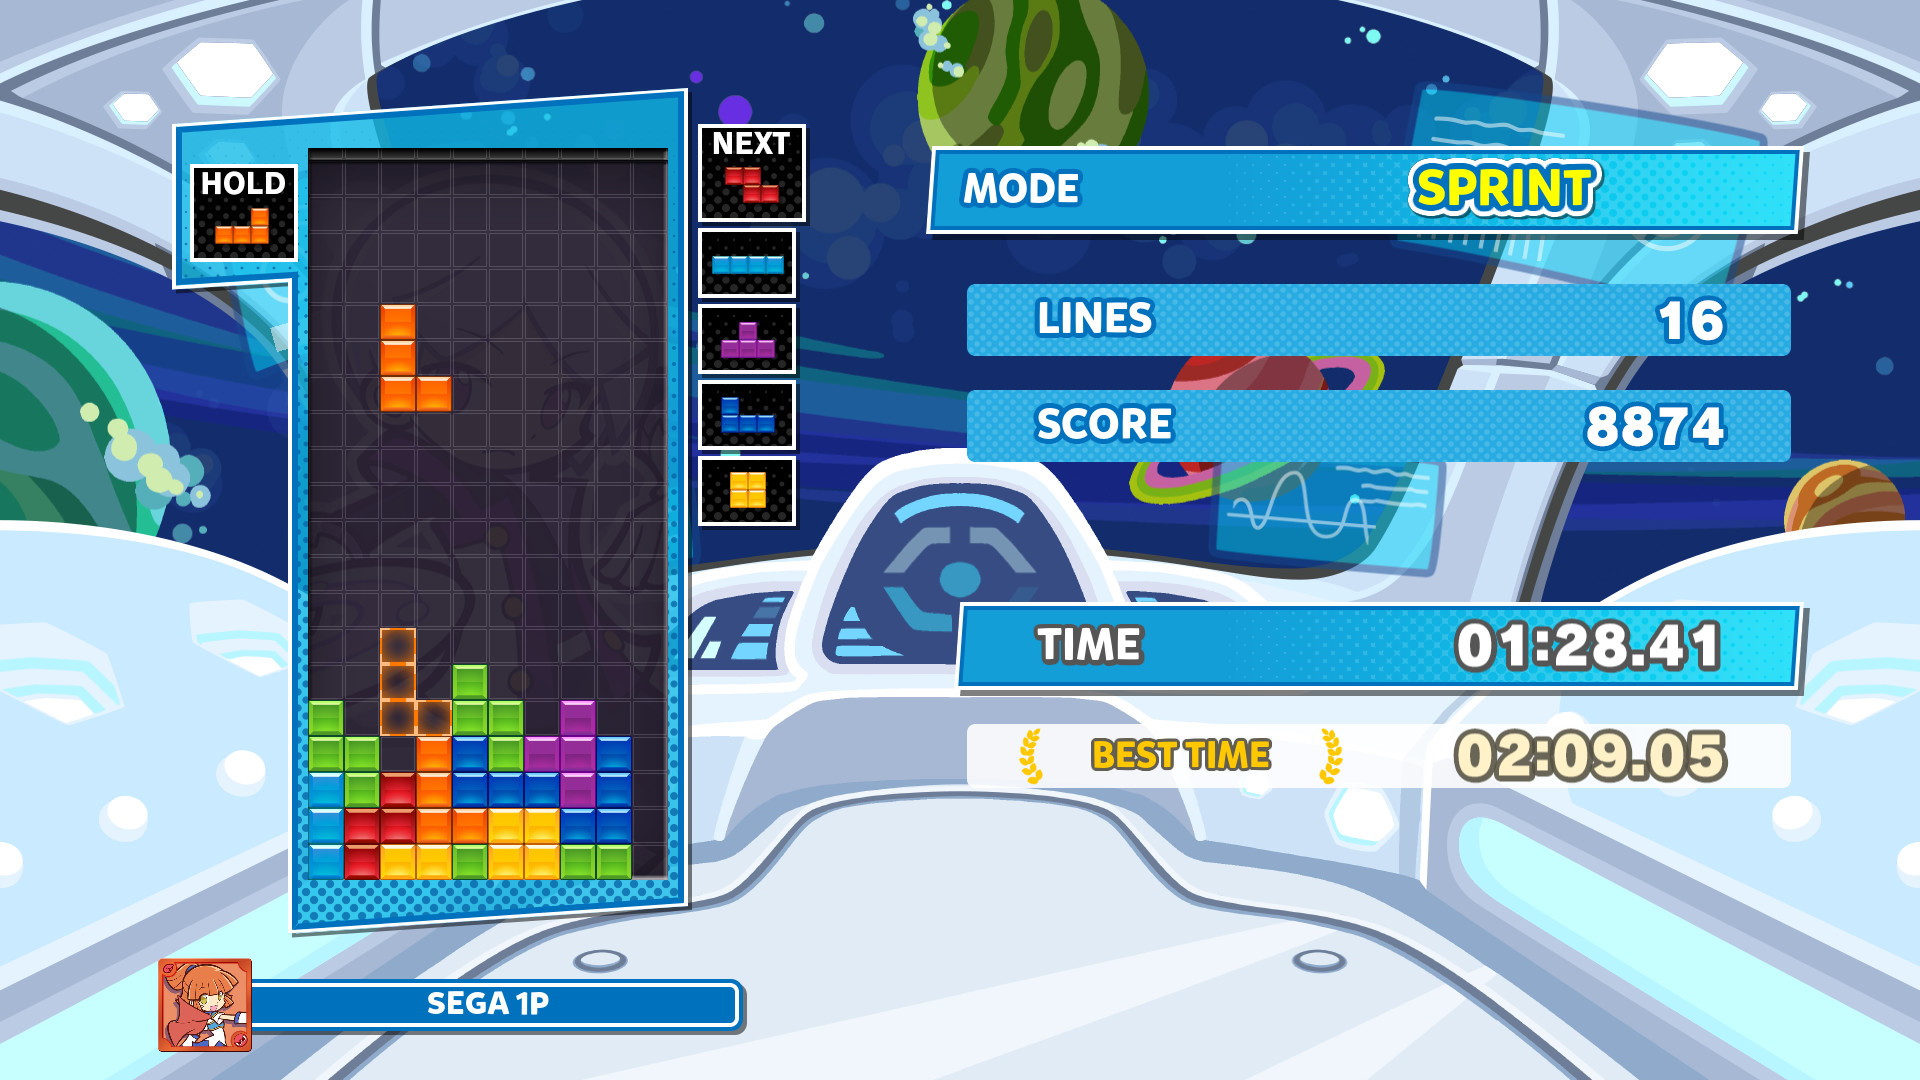 Puyo Puyo Tetris 2 - screenshot 2